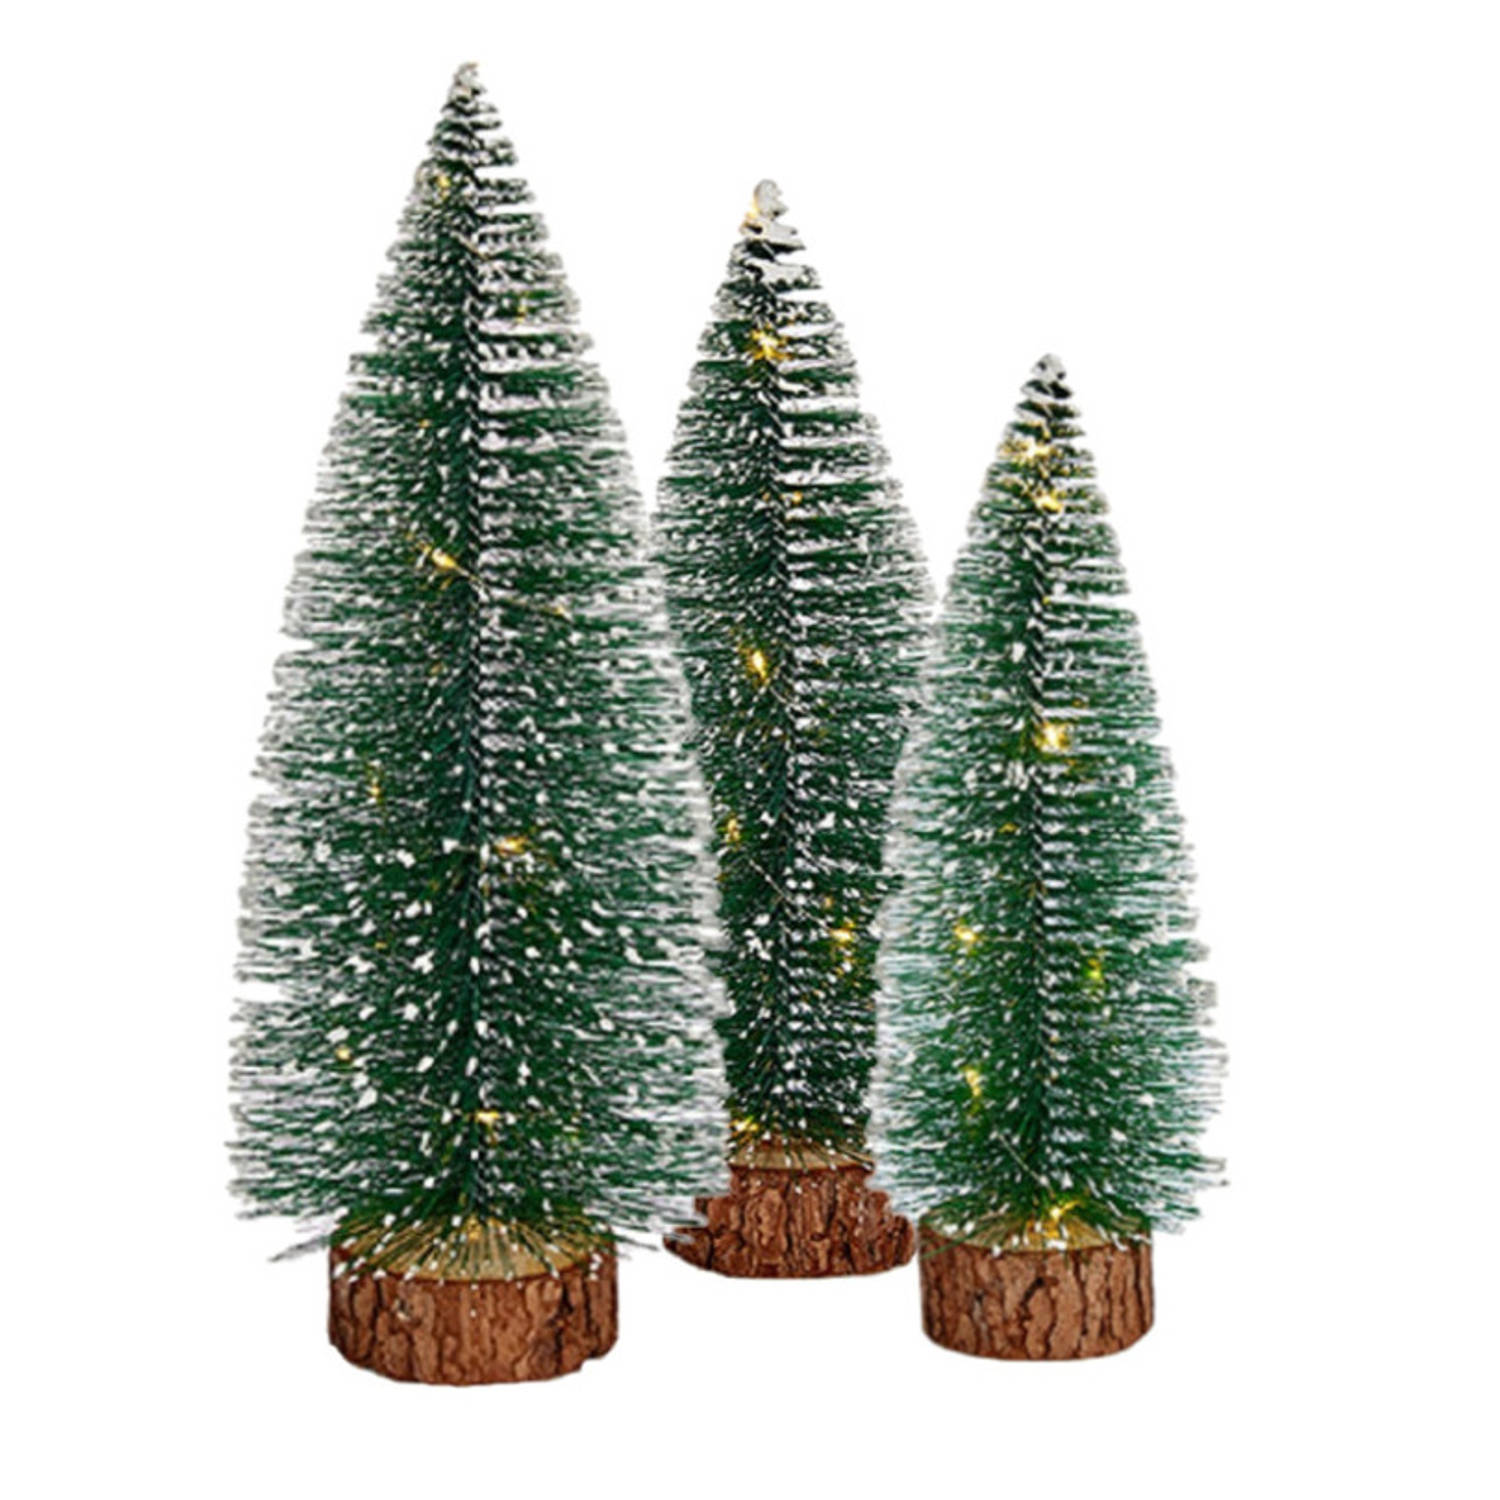 Kleine-mini decoratie kerstboompjes set van 3x st met licht 25-35 cm Kerstdorpen